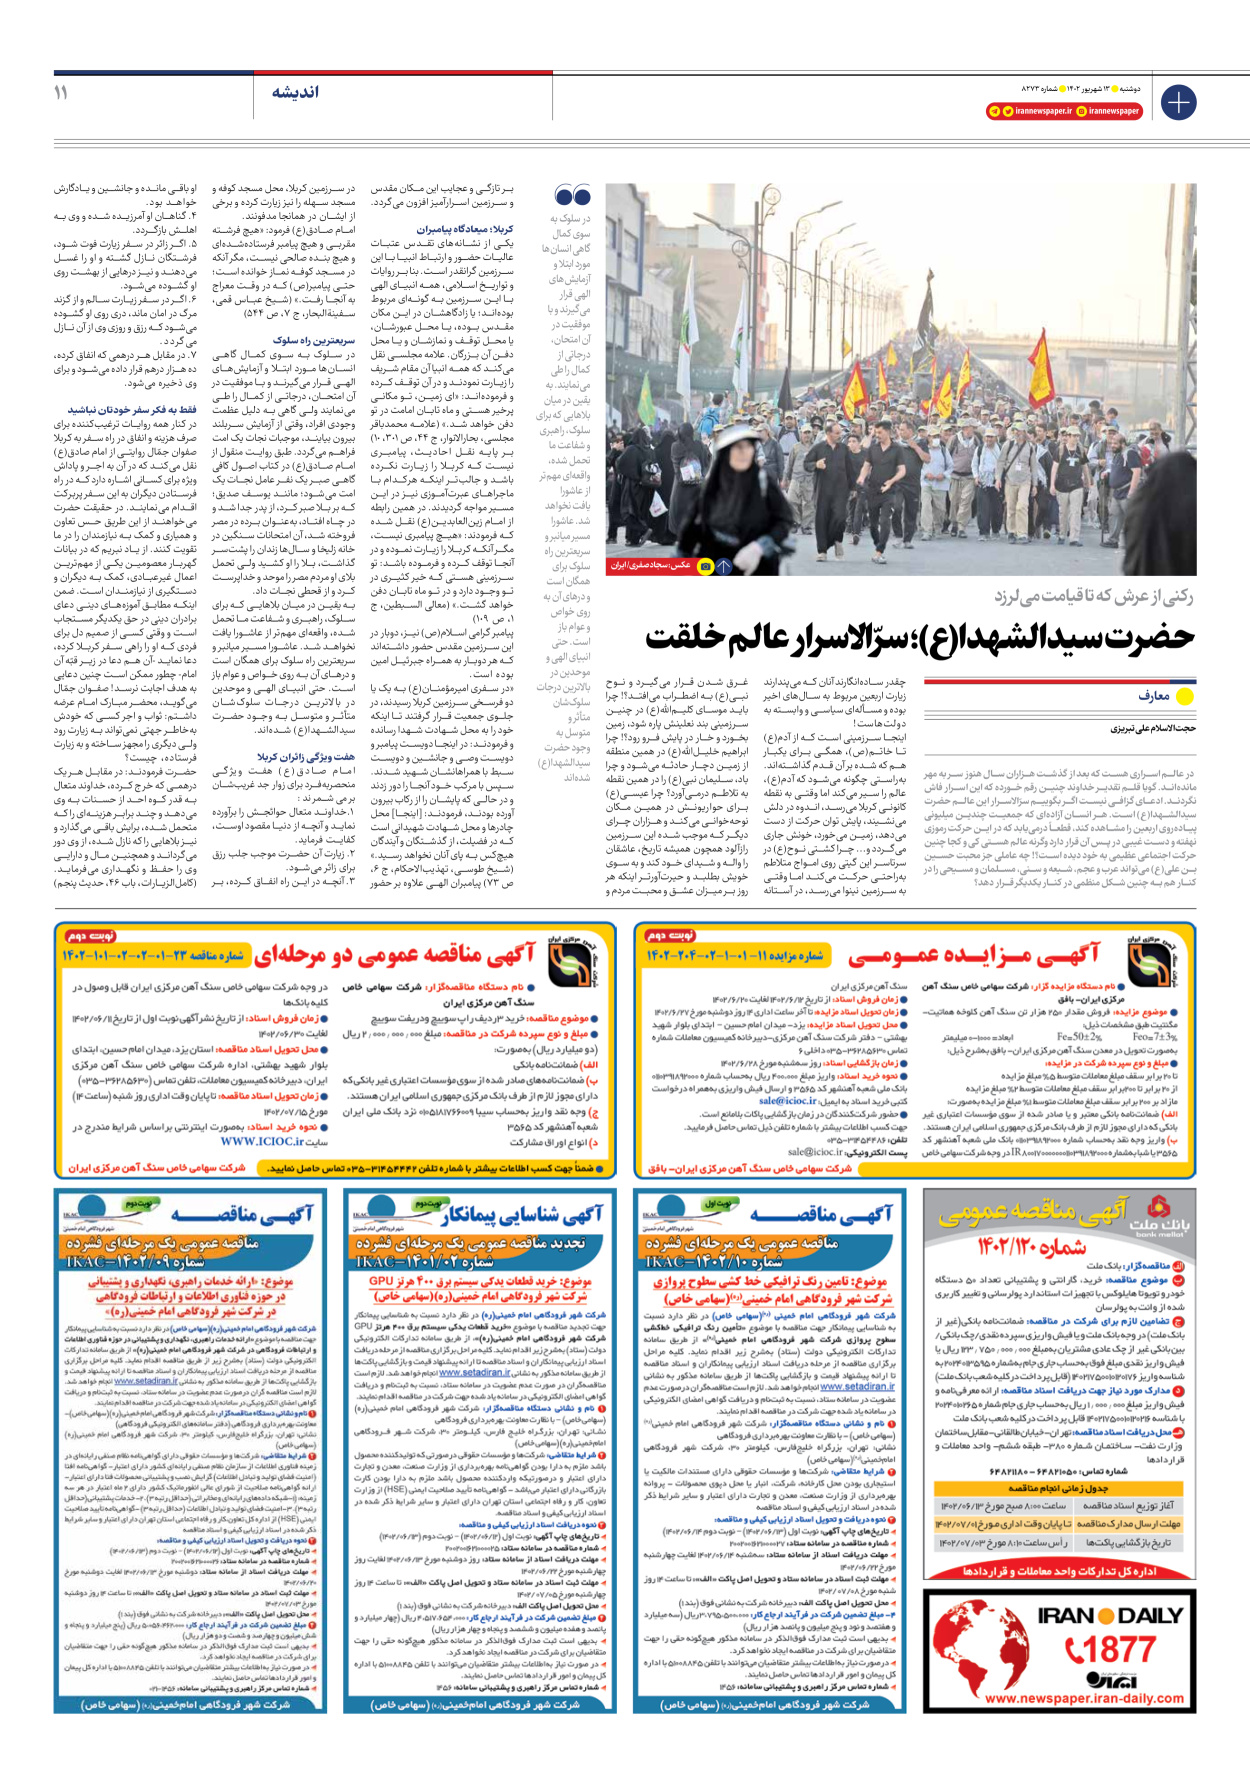 روزنامه ایران - شماره هشت هزار و دویست و هفتاد و سه - ۱۳ شهریور ۱۴۰۲ - صفحه ۱۱